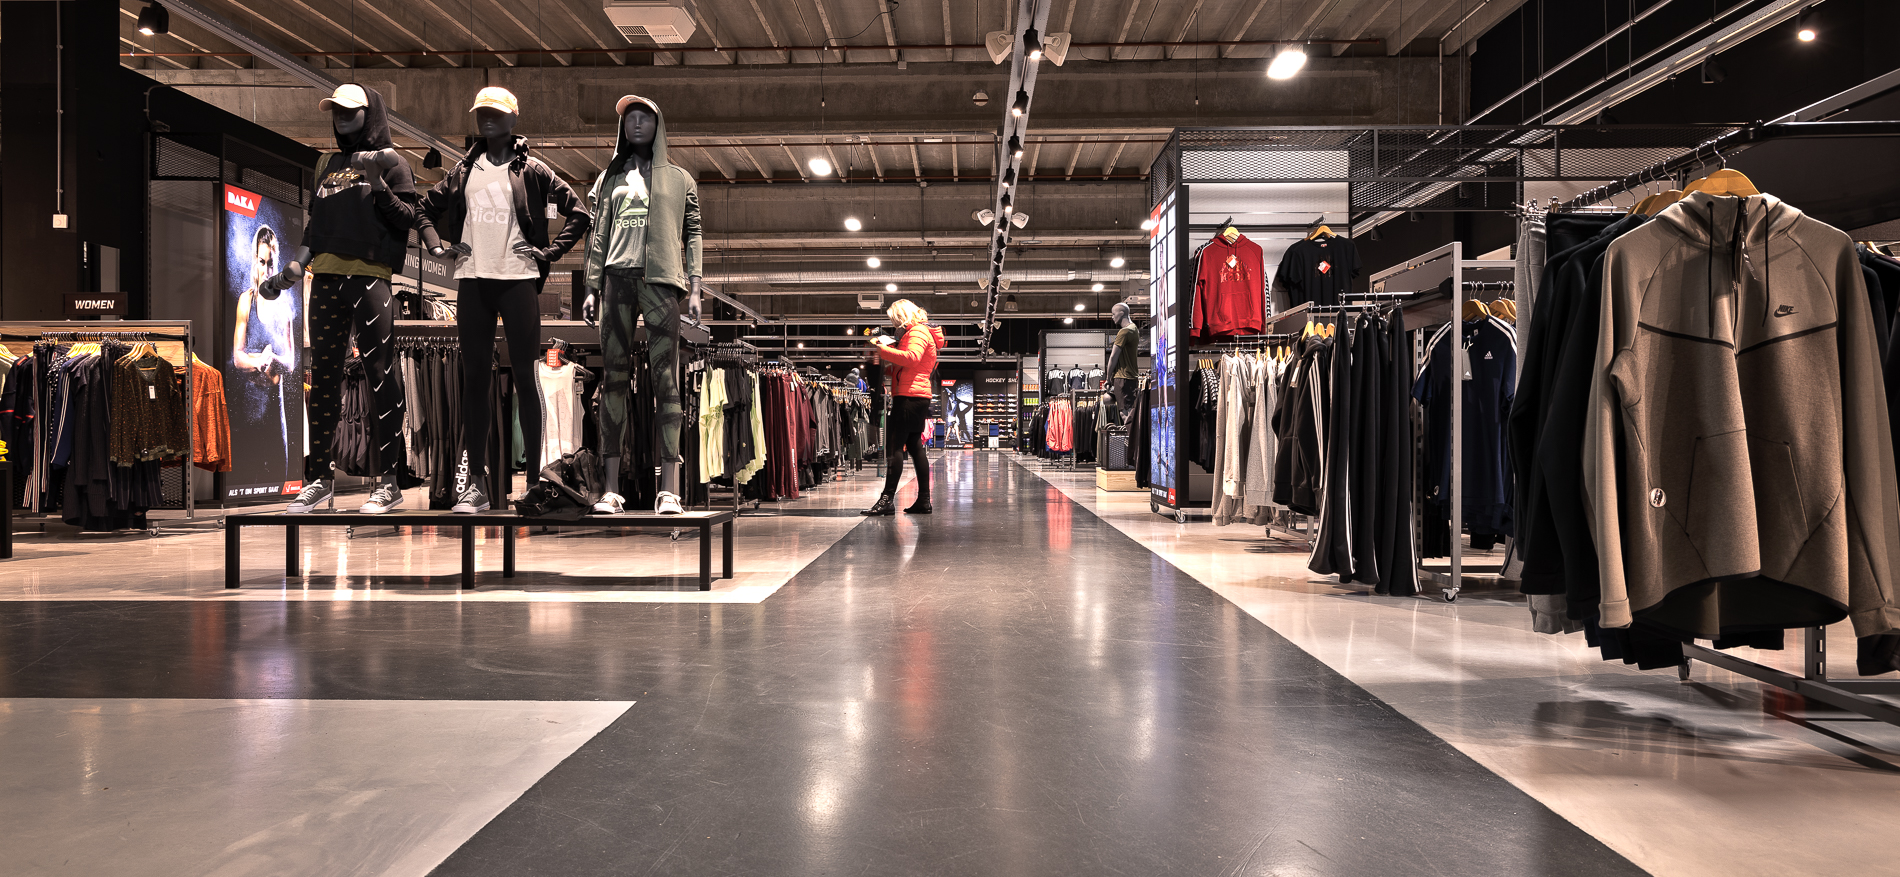 Daka Sport Apeldoorn | Winkelinrichting retailketen - Sport